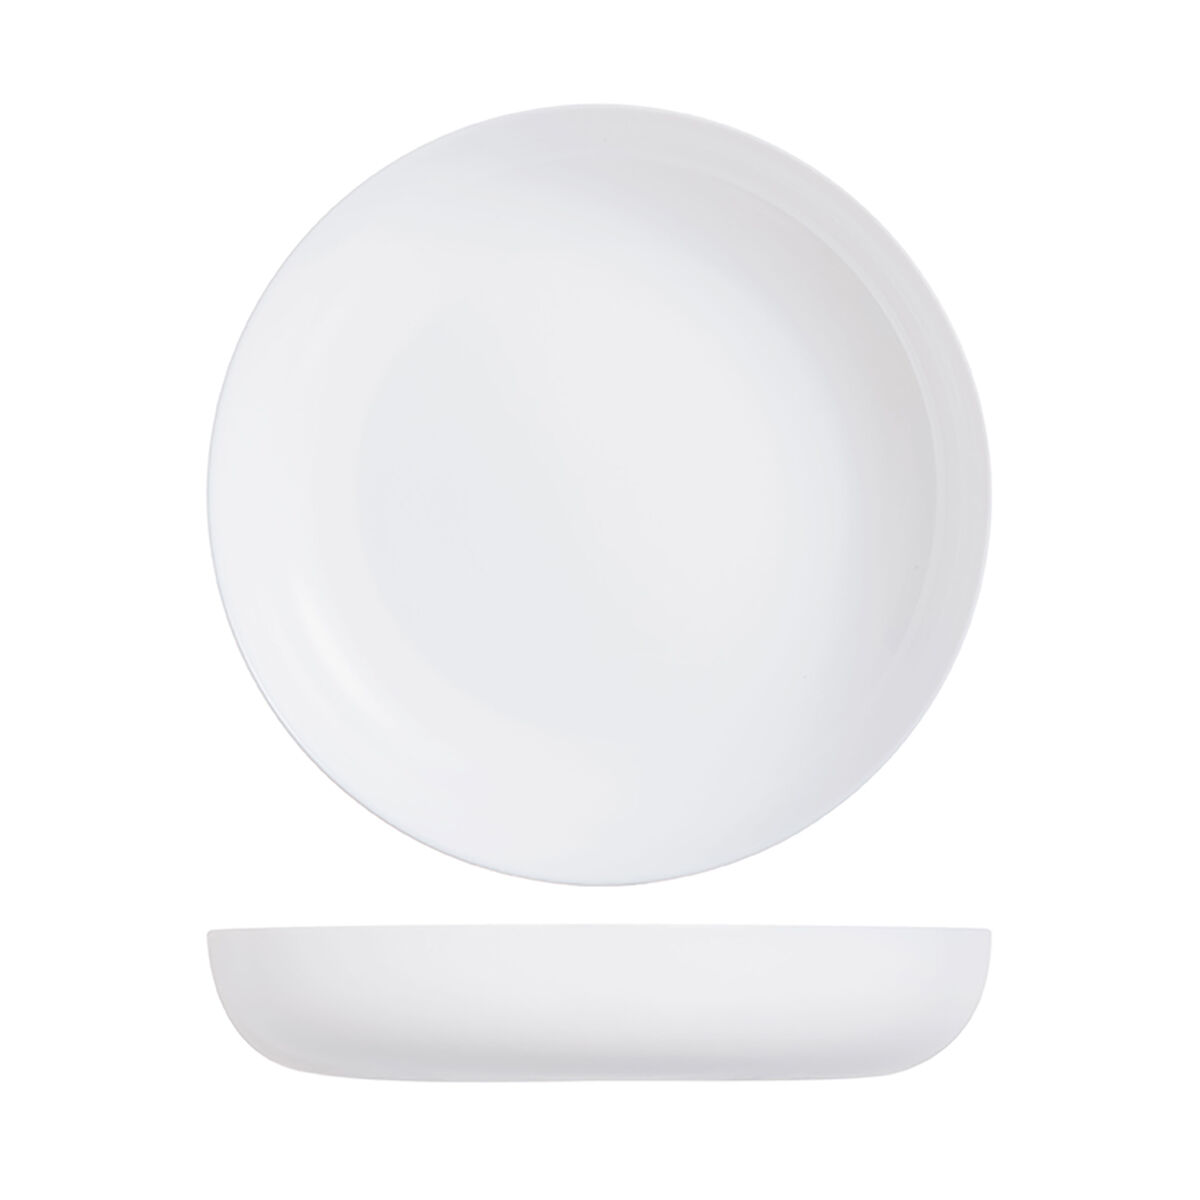 Тарелка глубокая с бортом Luminarc "Эволюшнс" 25 см, стеклокерамика, белый цвет, ARC, (/6/12)